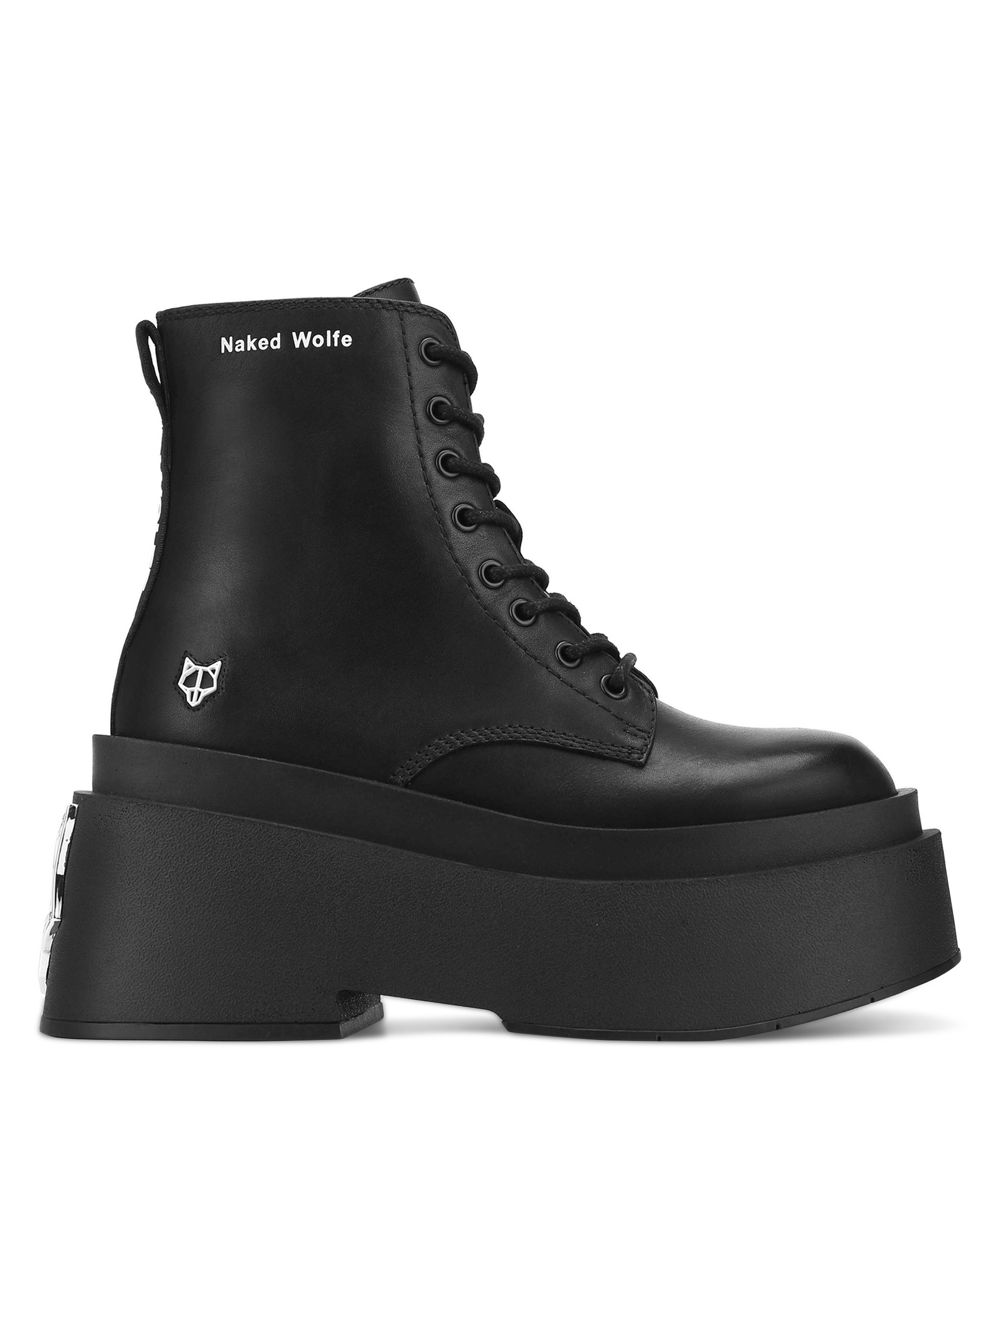 Черные армейские ботинки Saturn Naked Wolfe, черный черные армейские ботинки saturn naked wolfe черный